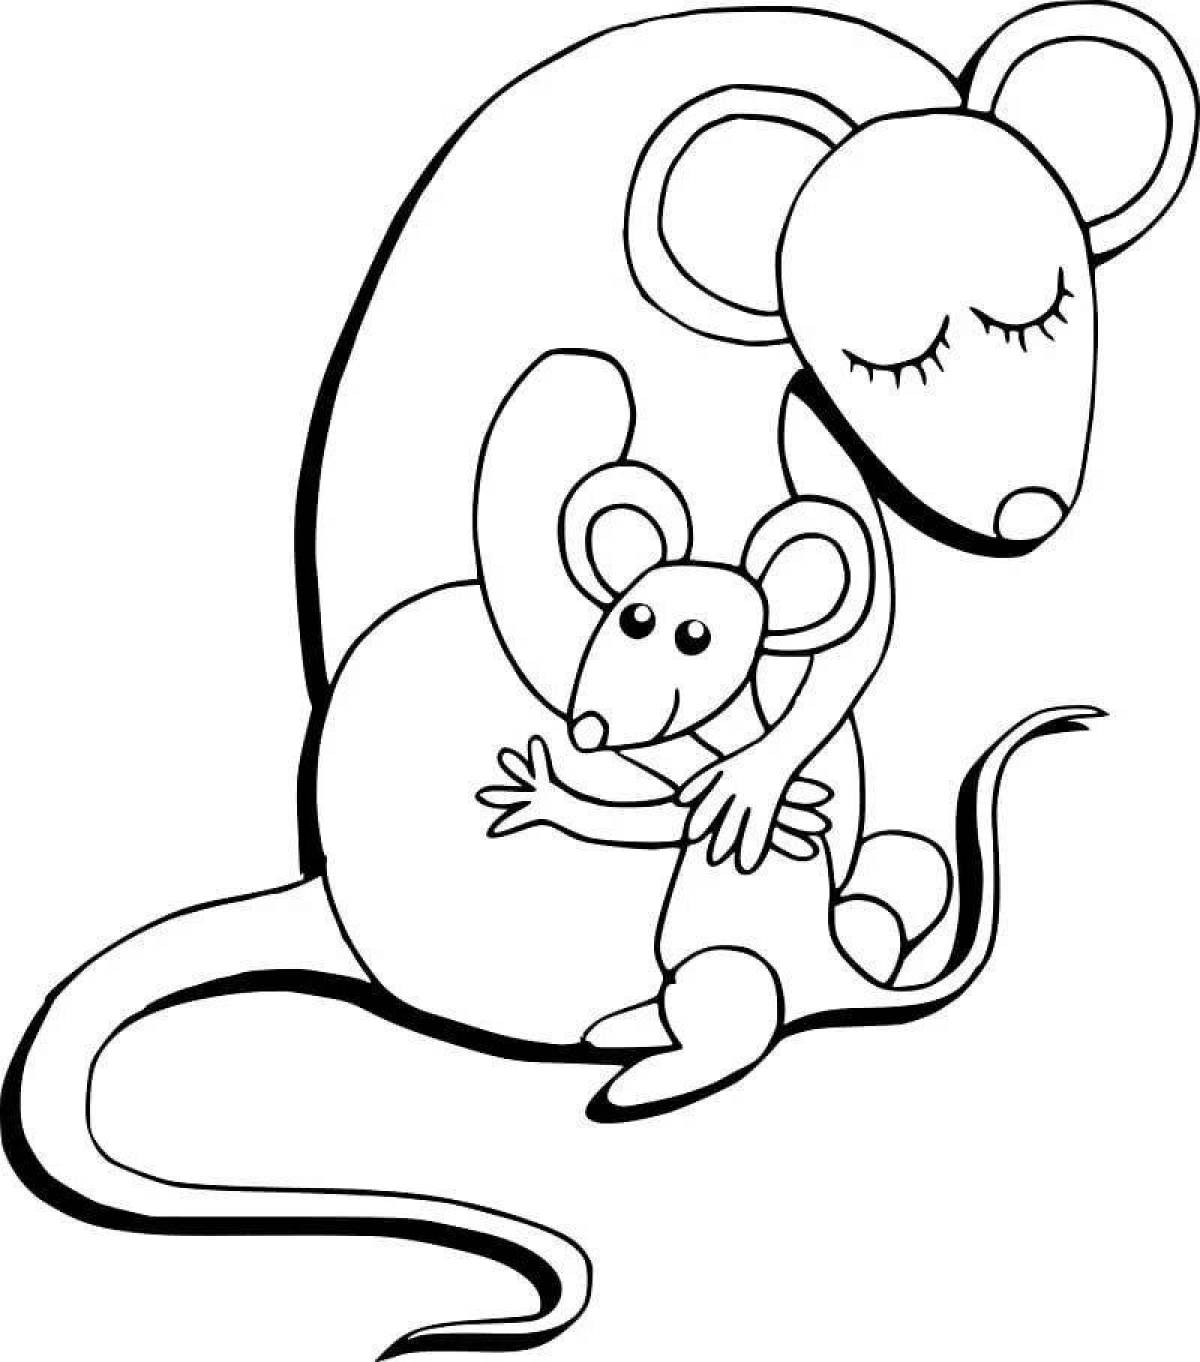 Joyful rat coloring book for kids